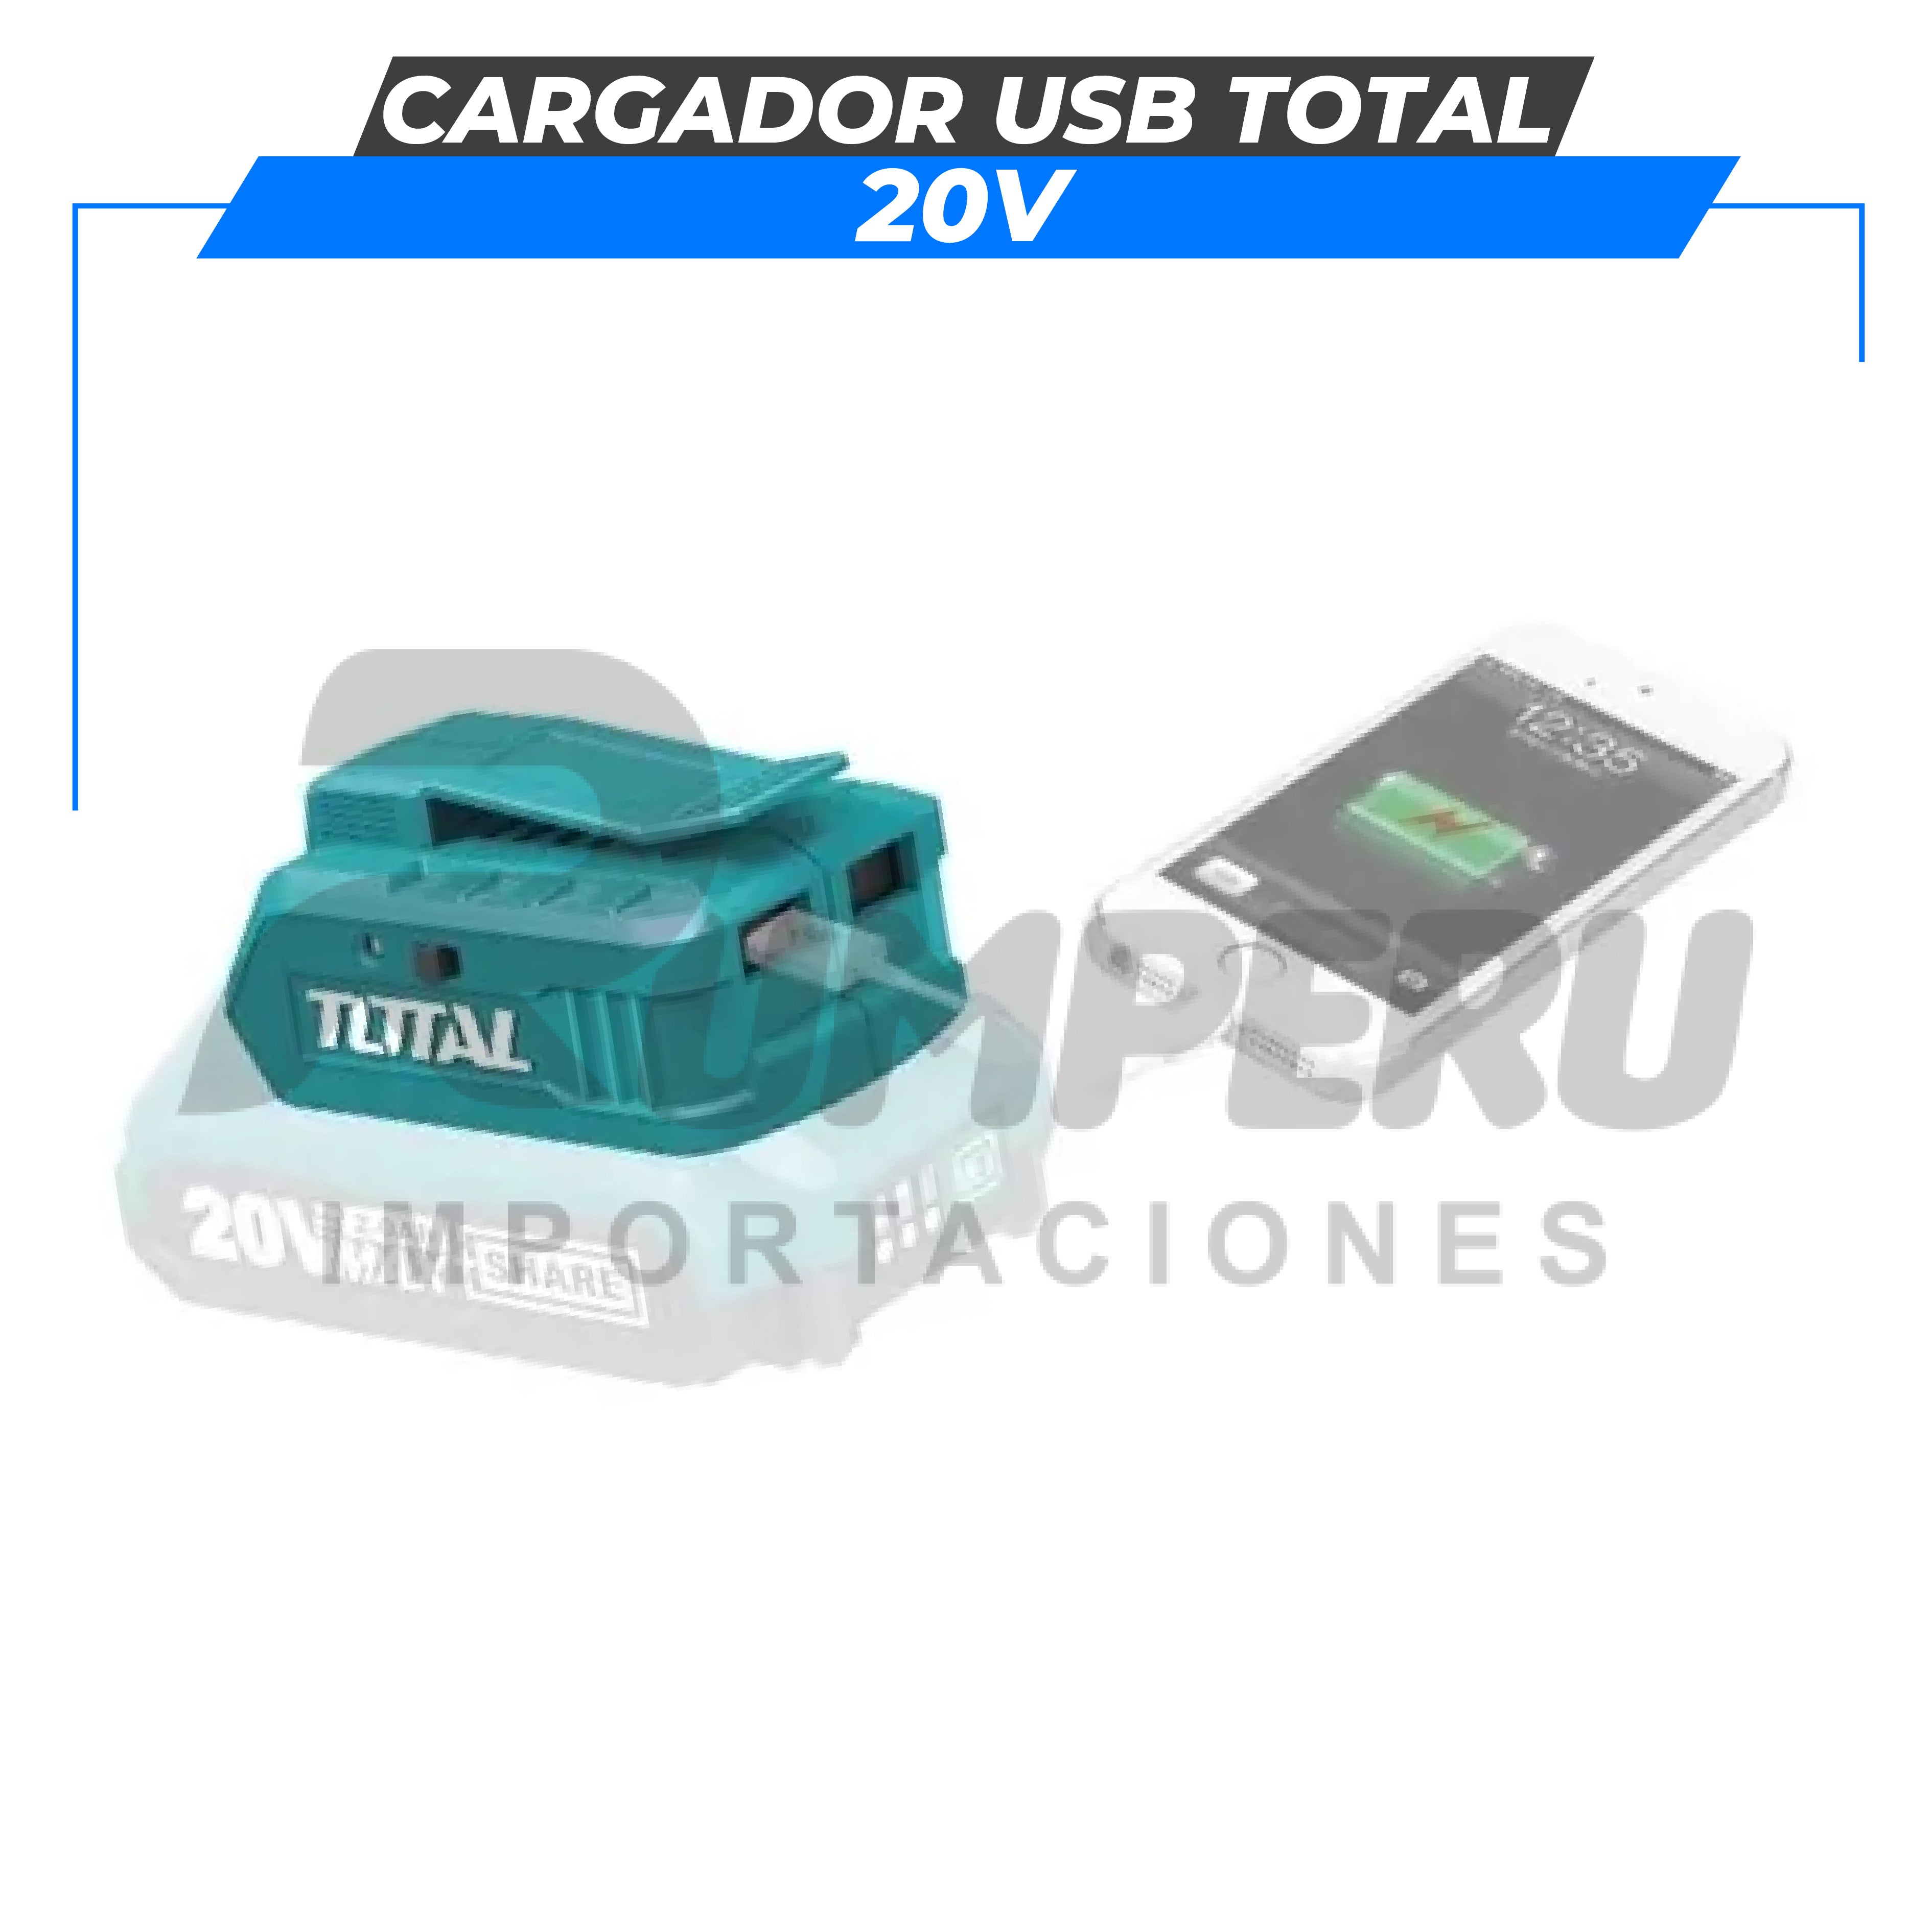 Cargador USB 20V TOTAL